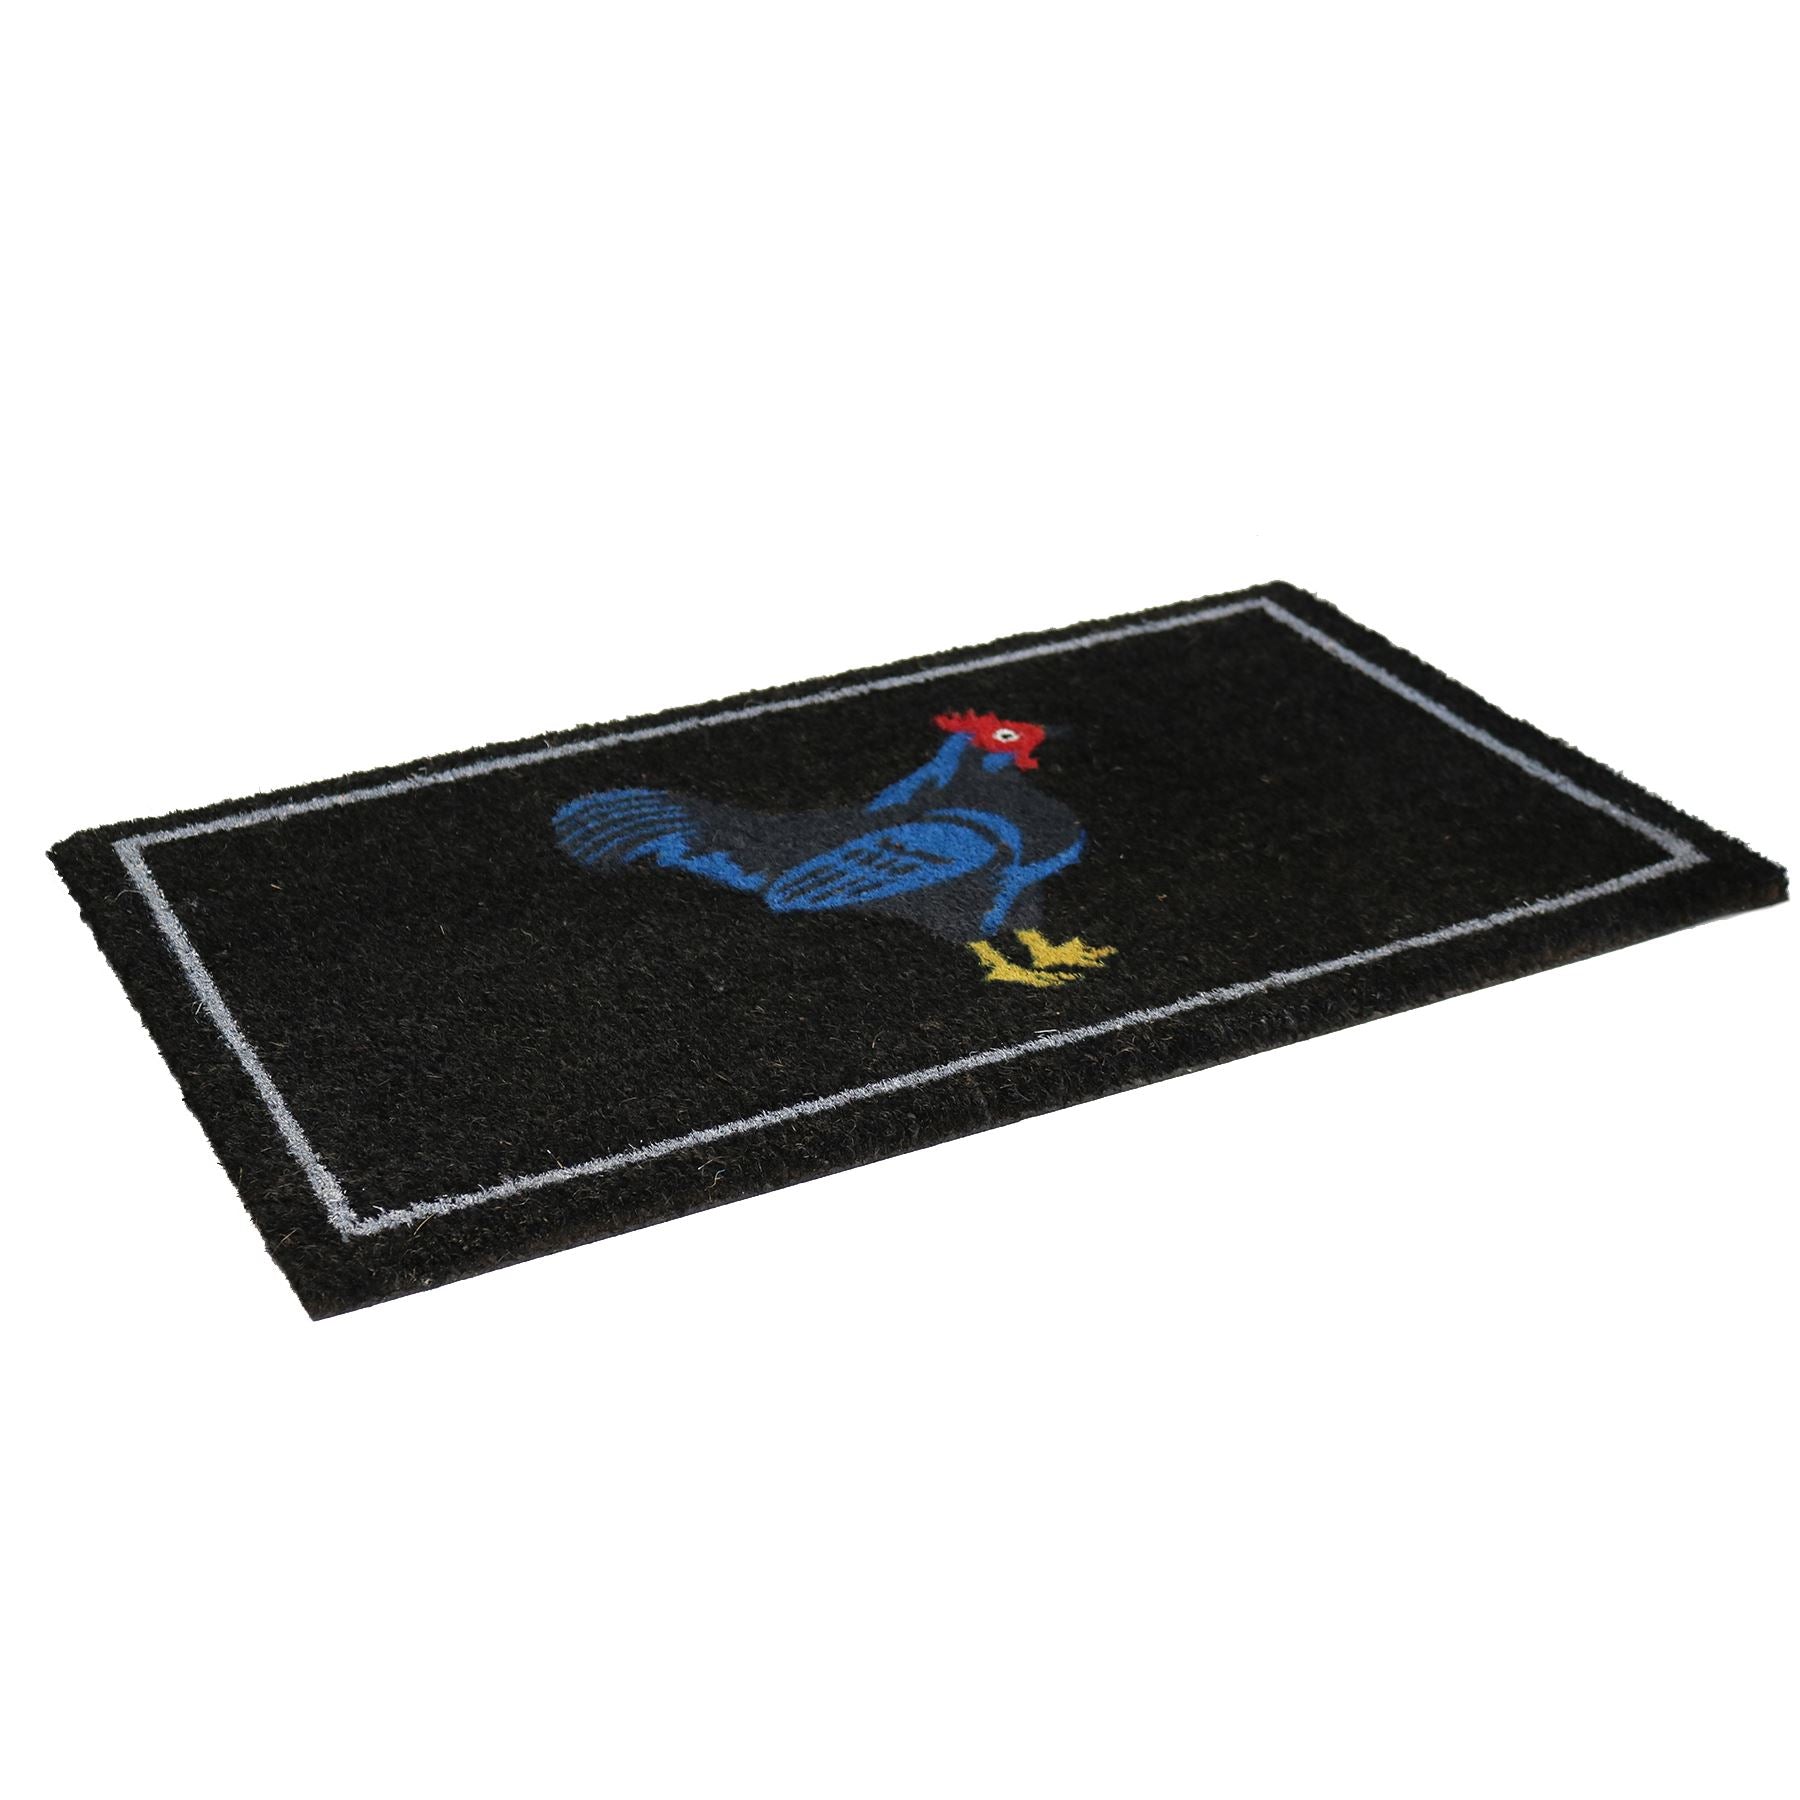 Cockerel Rooster Design Door Mat Doormats Welcome Home Chicken 45 x 75cm